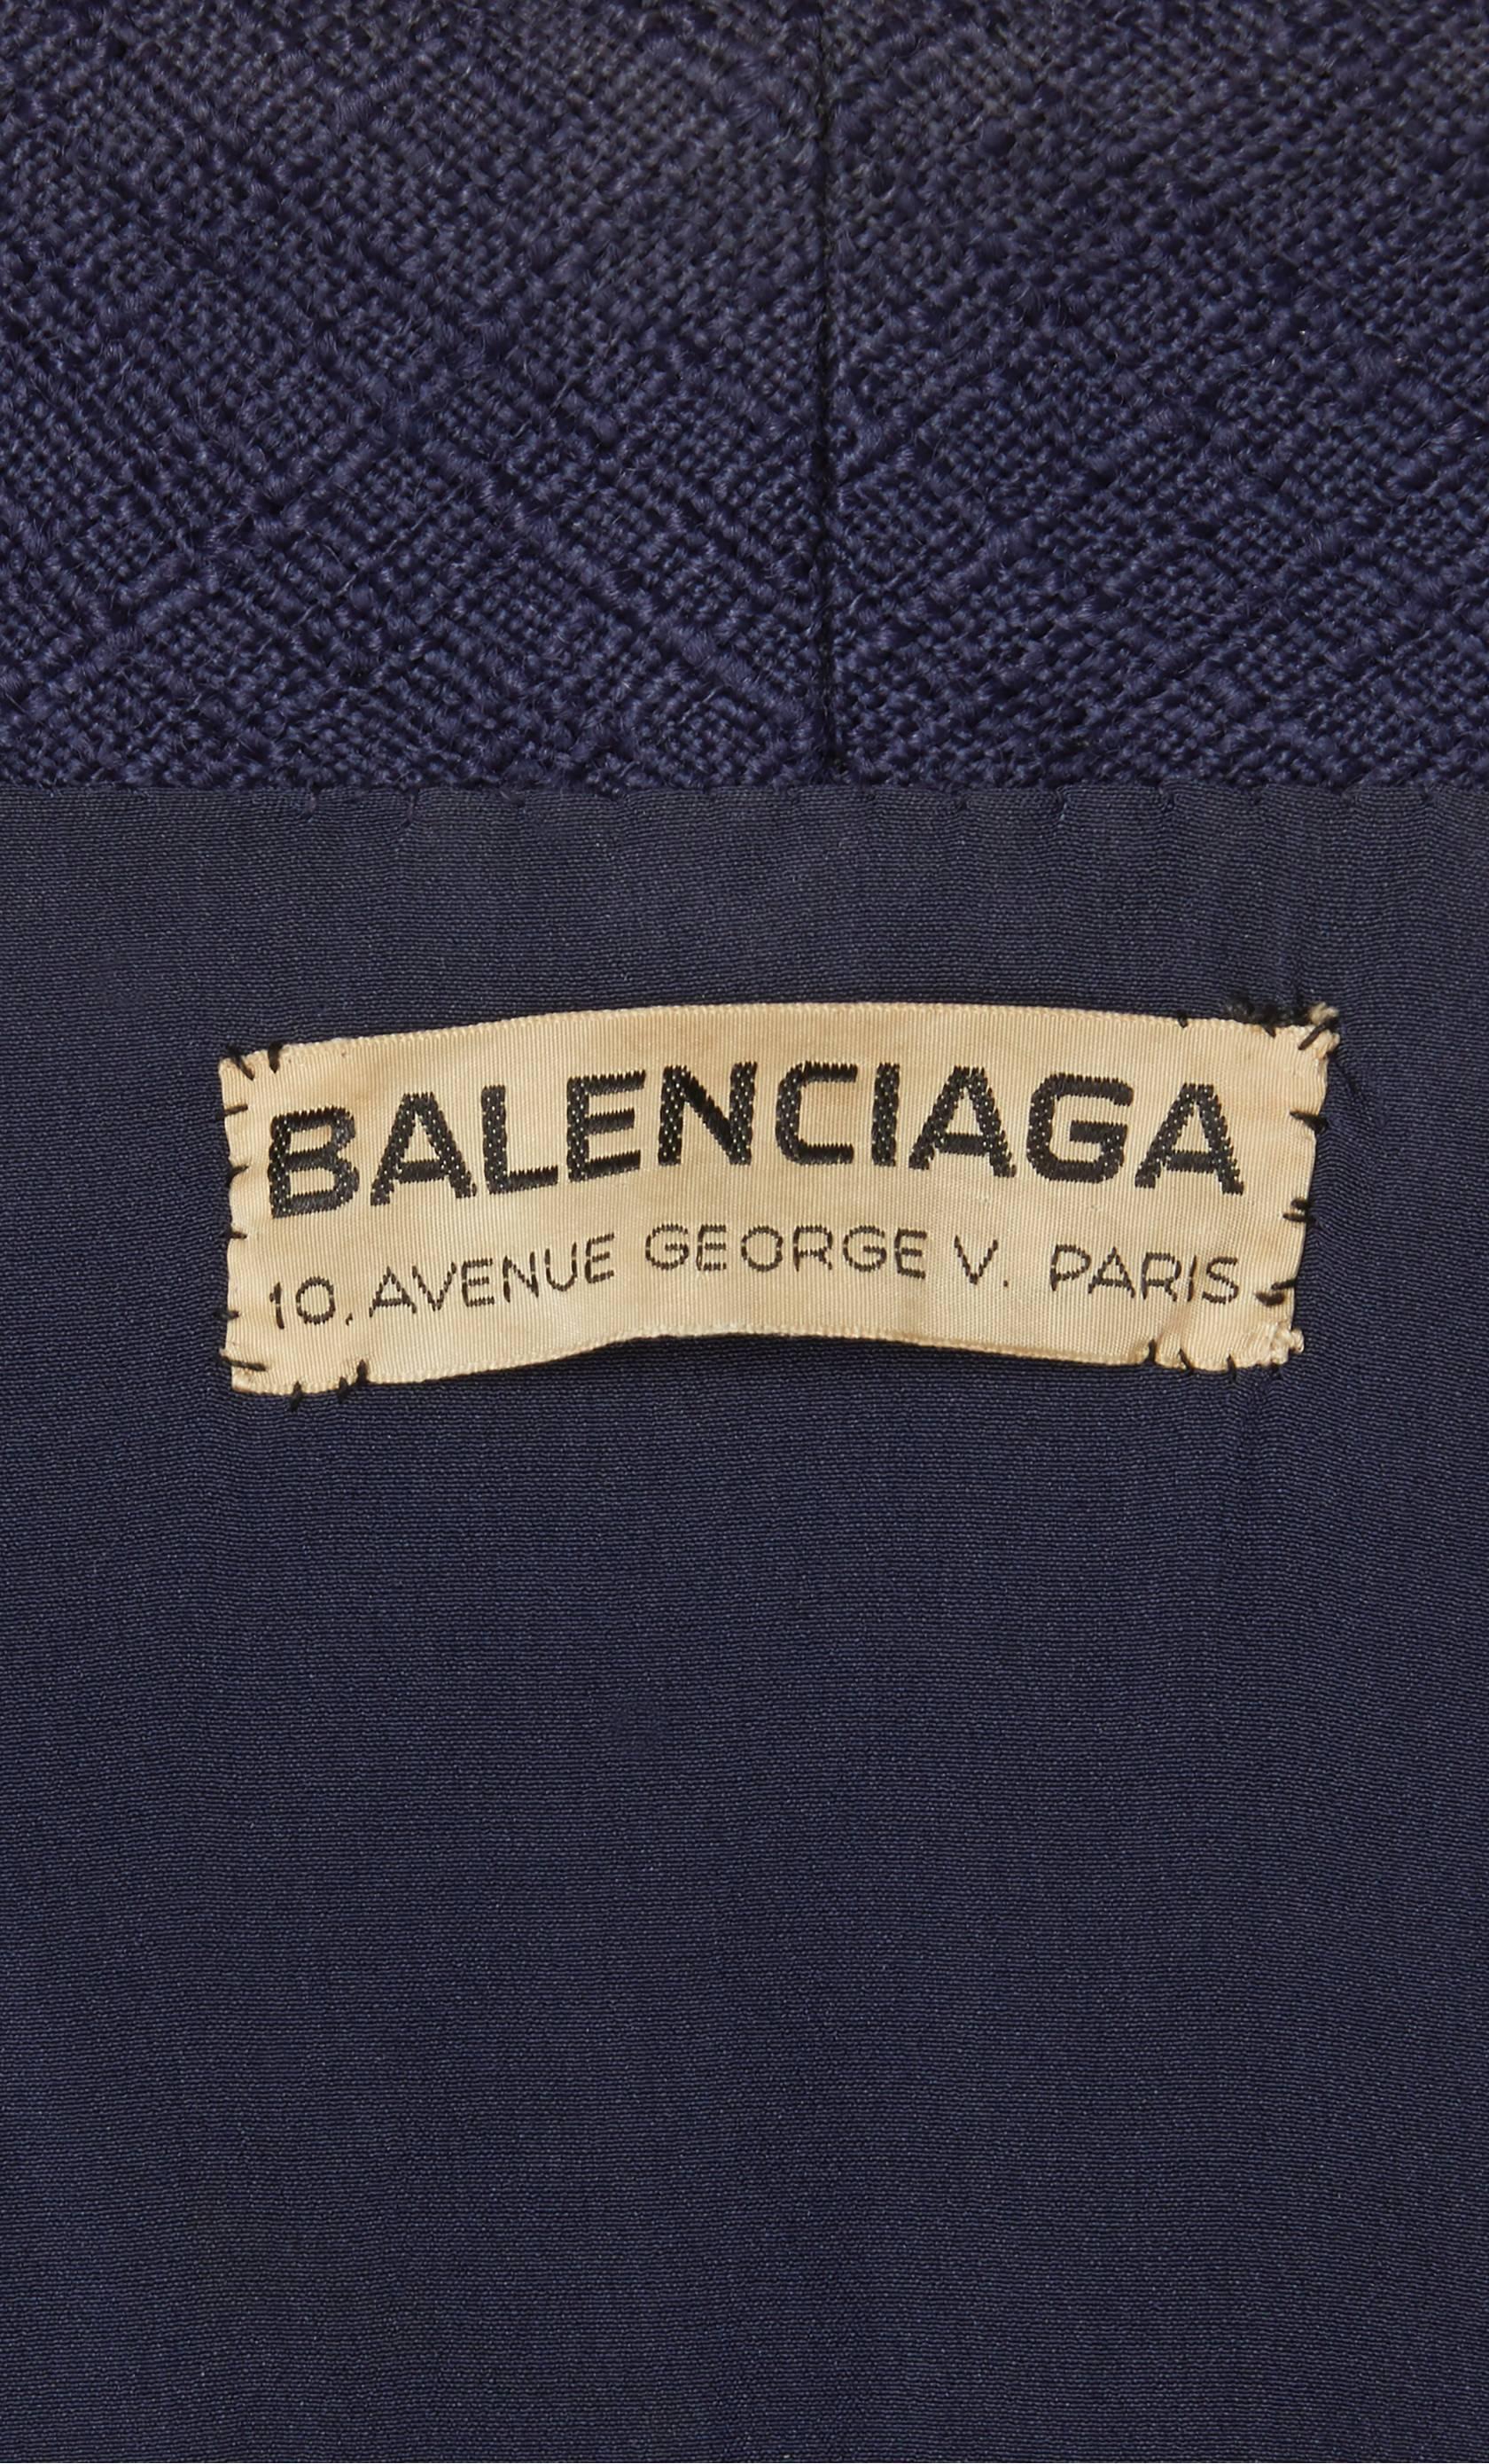 Women's Balenciaga haute couture navy skirt suit, circa 1963